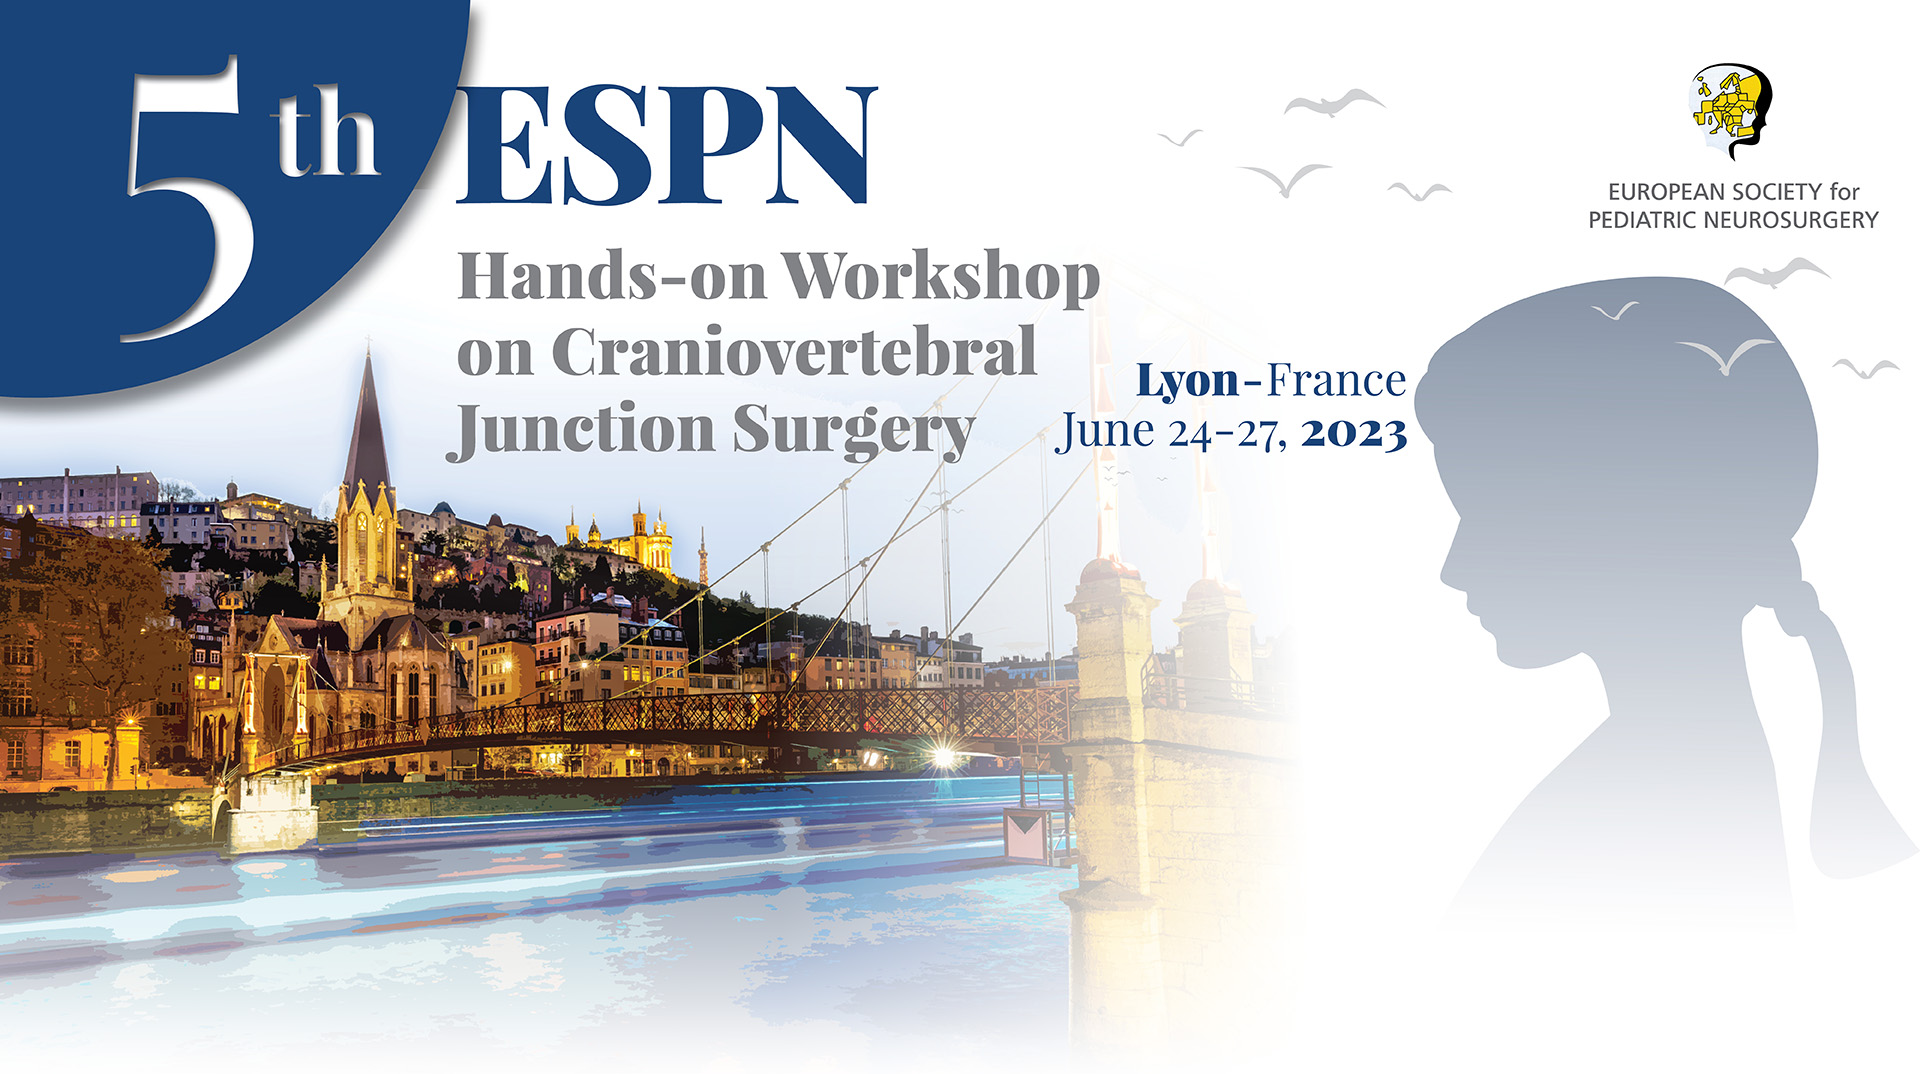 5th ESPN Hands-on Workshop on Craniovertebral Junction Surgery | June 24-27, 2023 | Lyon, France